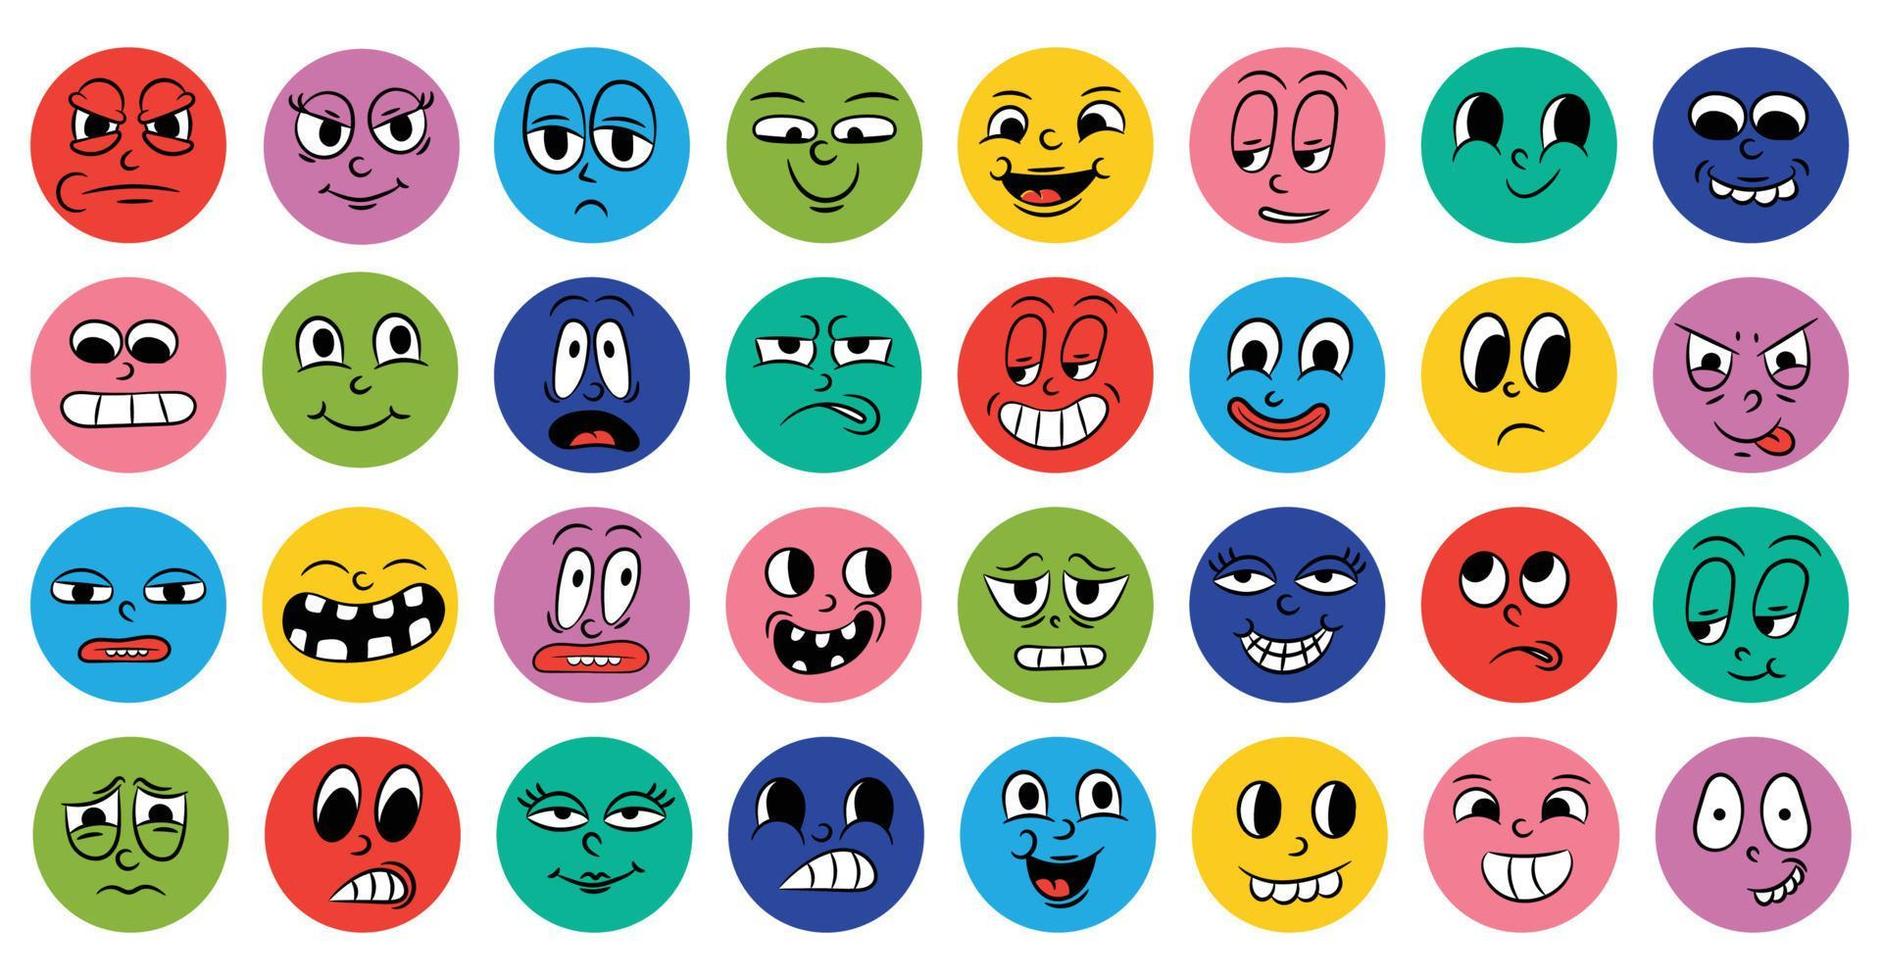 conjunto de caras cómicas de dibujos animados en estilo retro con diferentes expresiones de emociones. iconos redondos abstractos de cabezas de personajes emocionales. Animación de personas emoji al estilo de los años 50 y 60. vector